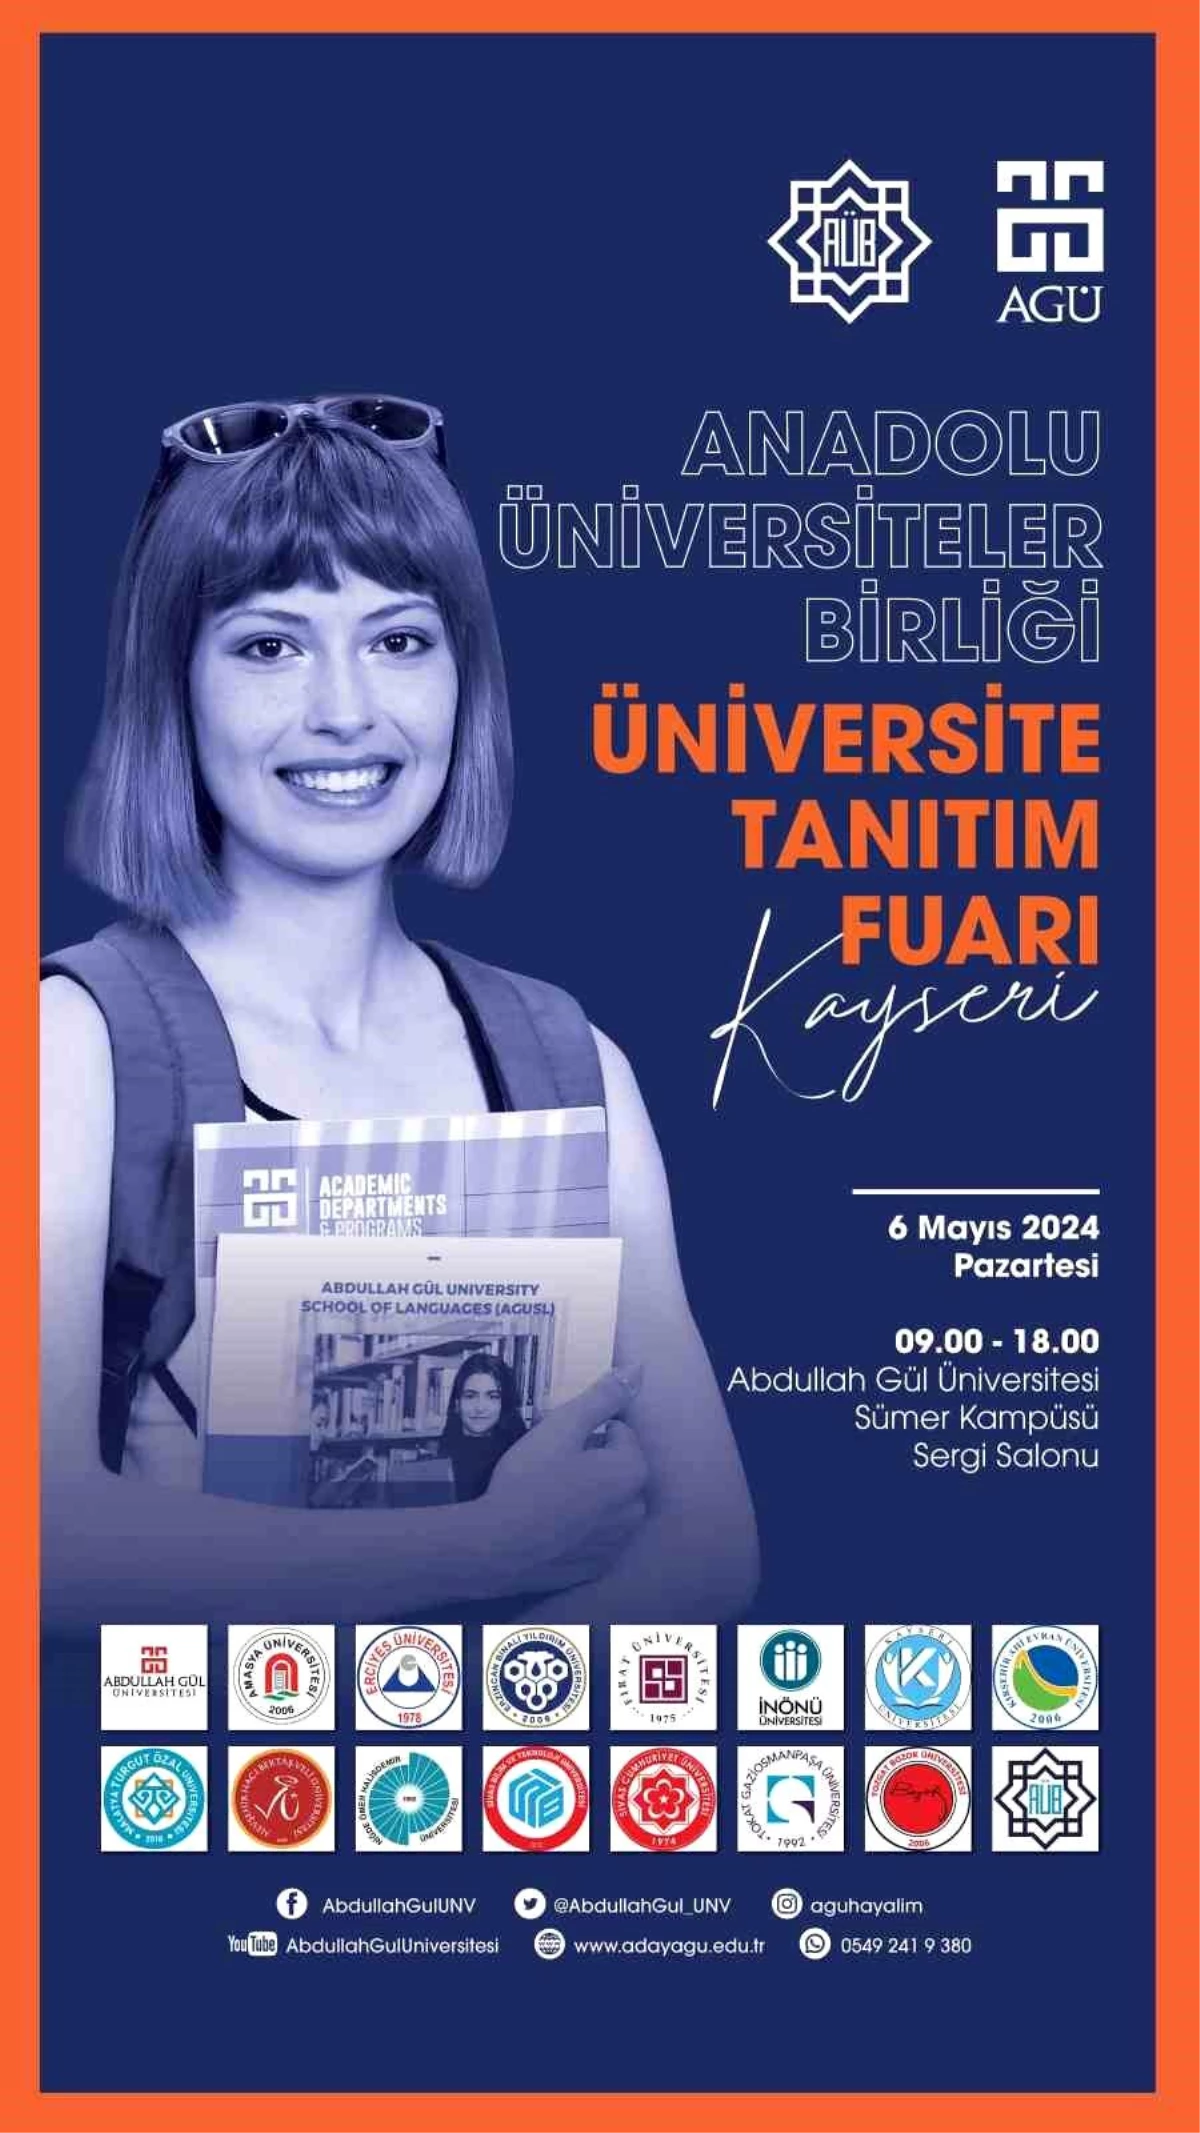 Anadolu Üniversiteler Birliği Üniversite Tanıtım Fuarı AGÜ\'de yapılacak